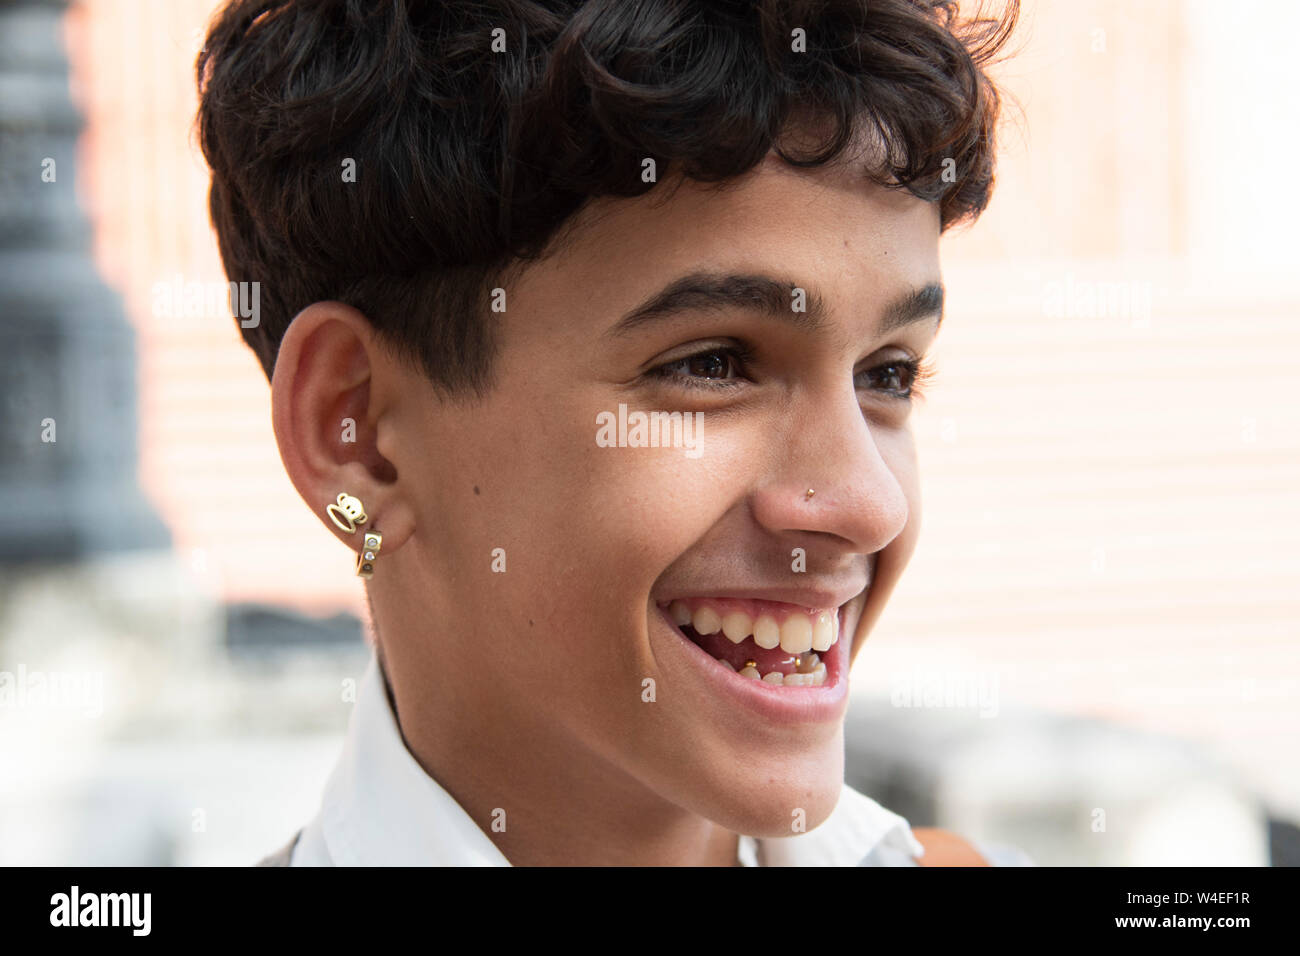 Jeune garçon cubain se moque de ses amis révélant une langue piecing et montrant outre de plusieurs boucles d' Banque D'Images